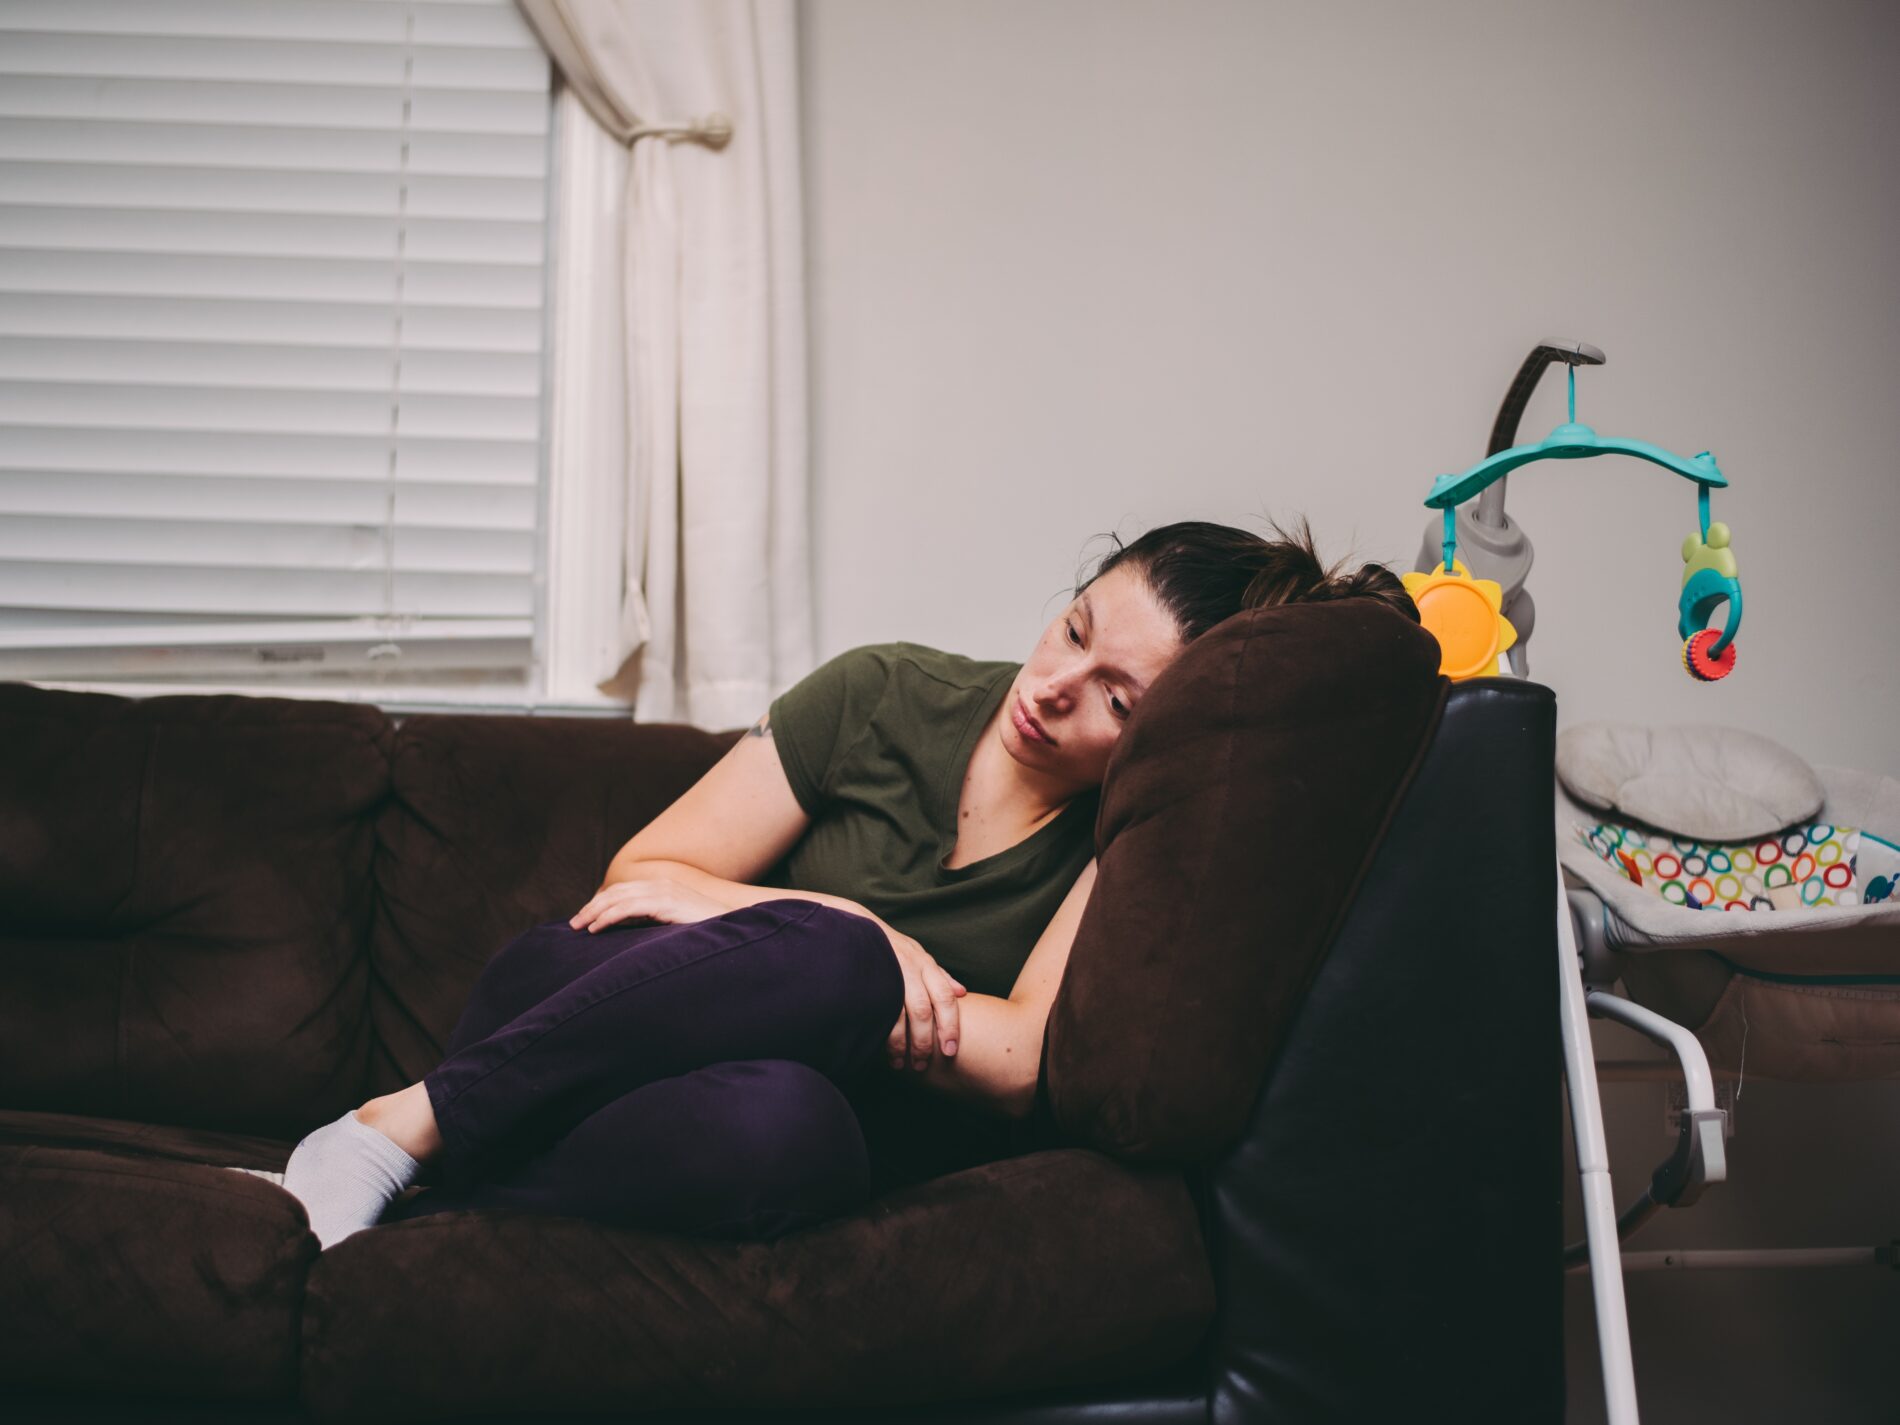 Femme présentant des symptômes de dépression post-partum, assise en boule sur son canapé.